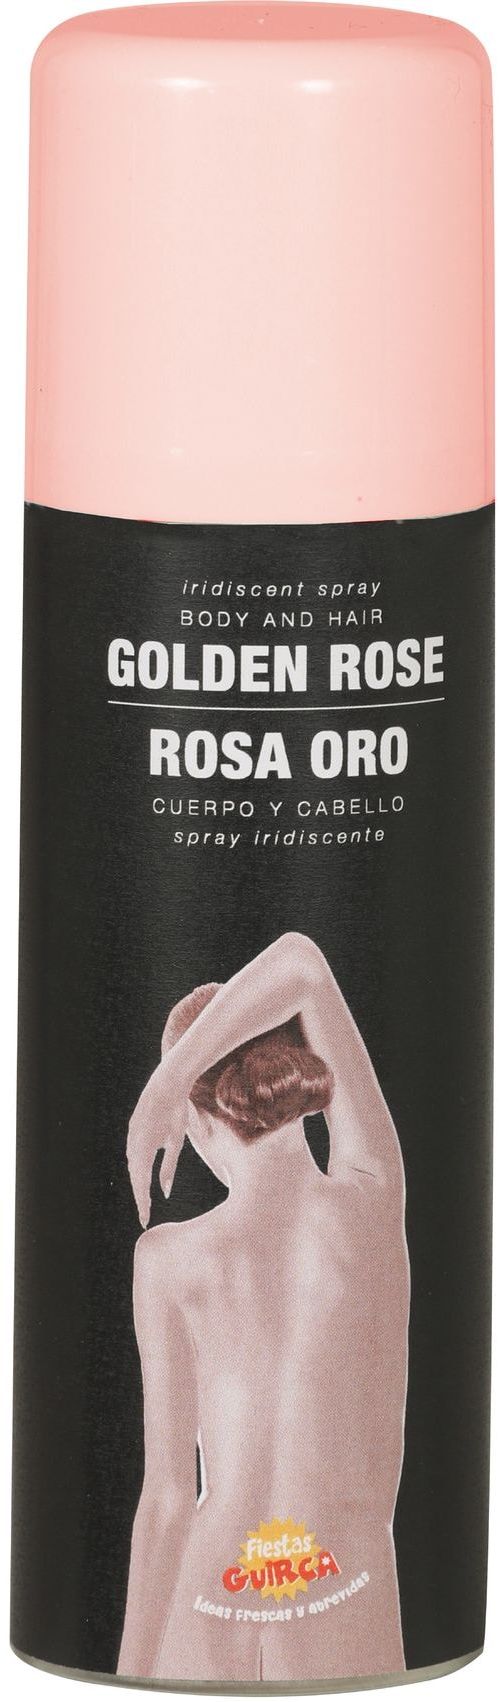 Bodyspray roze goud